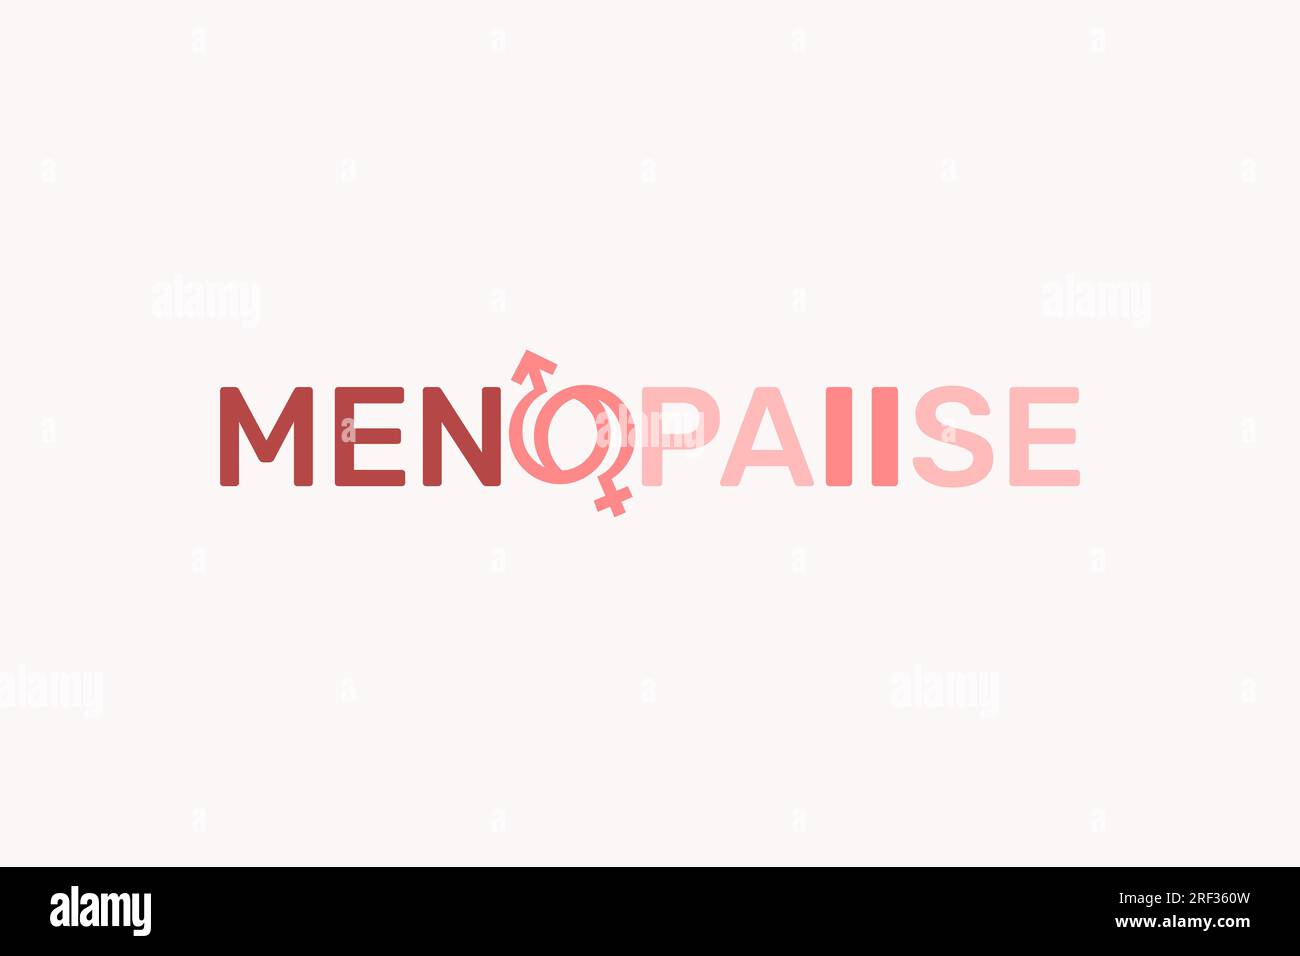 Menopause logo design Stock Vector